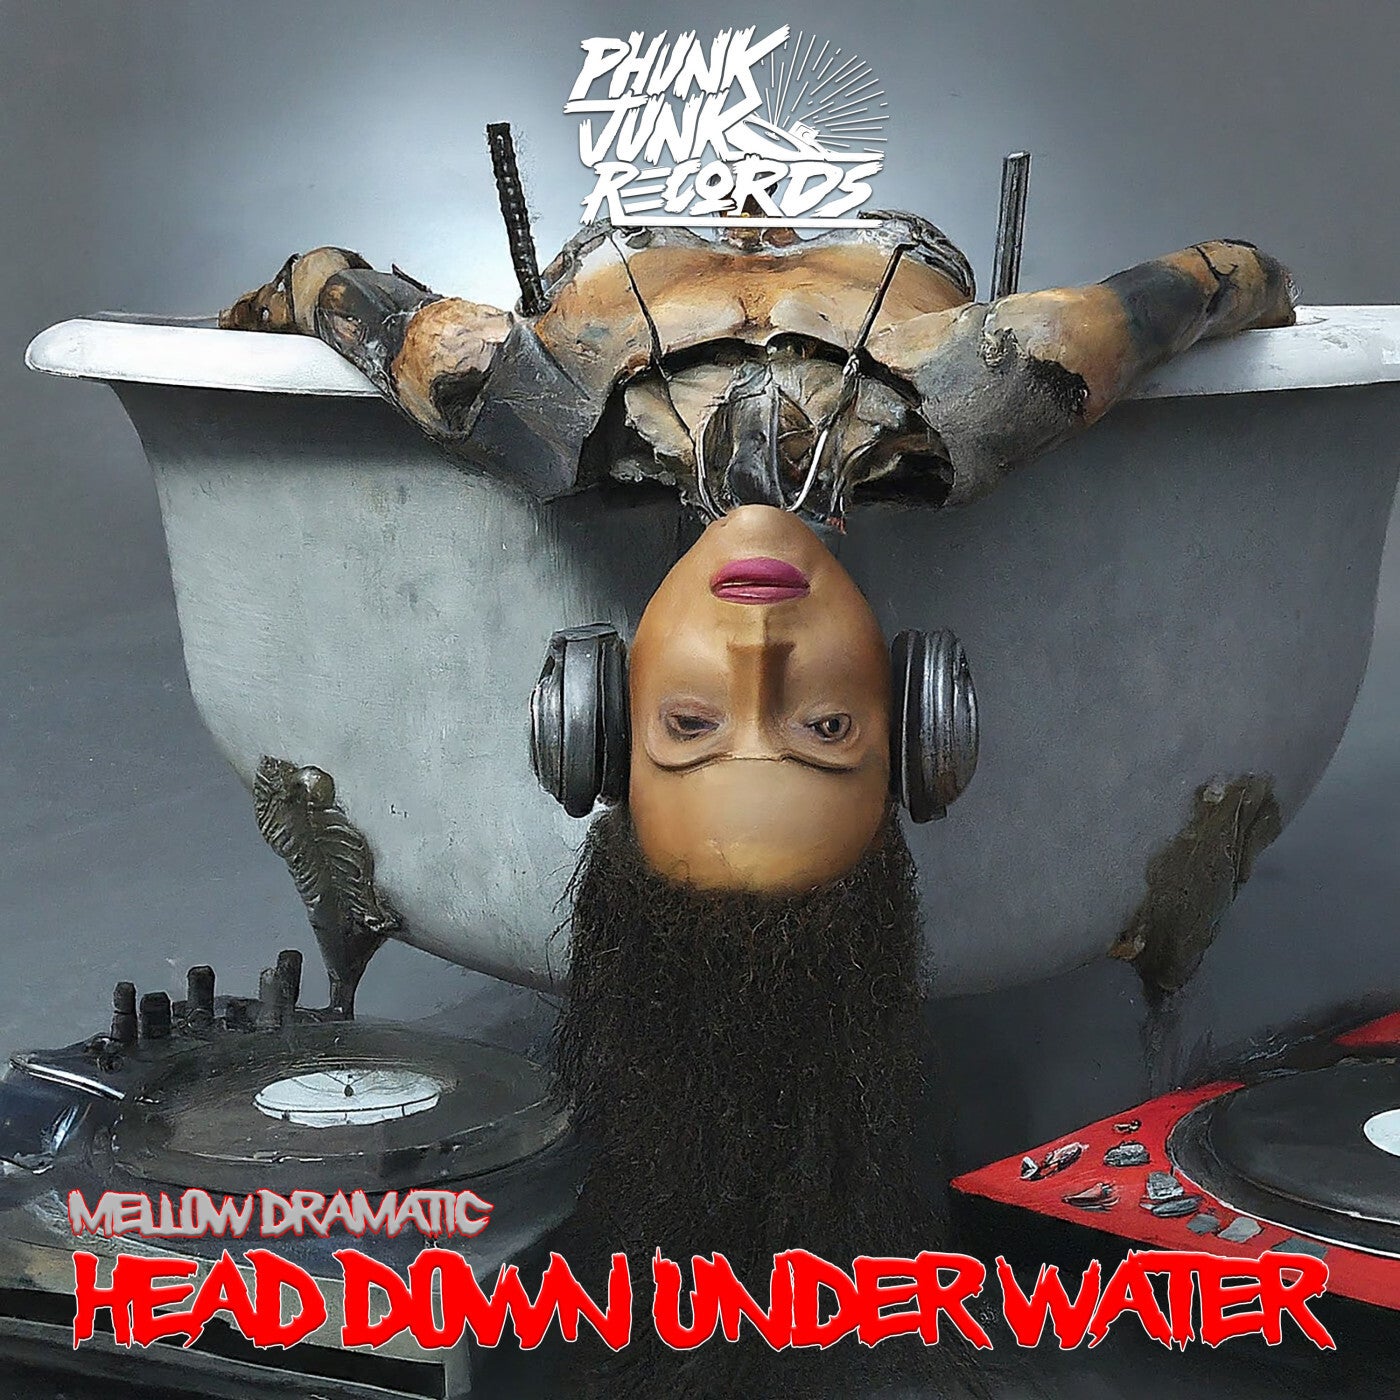 Head Down Under Water